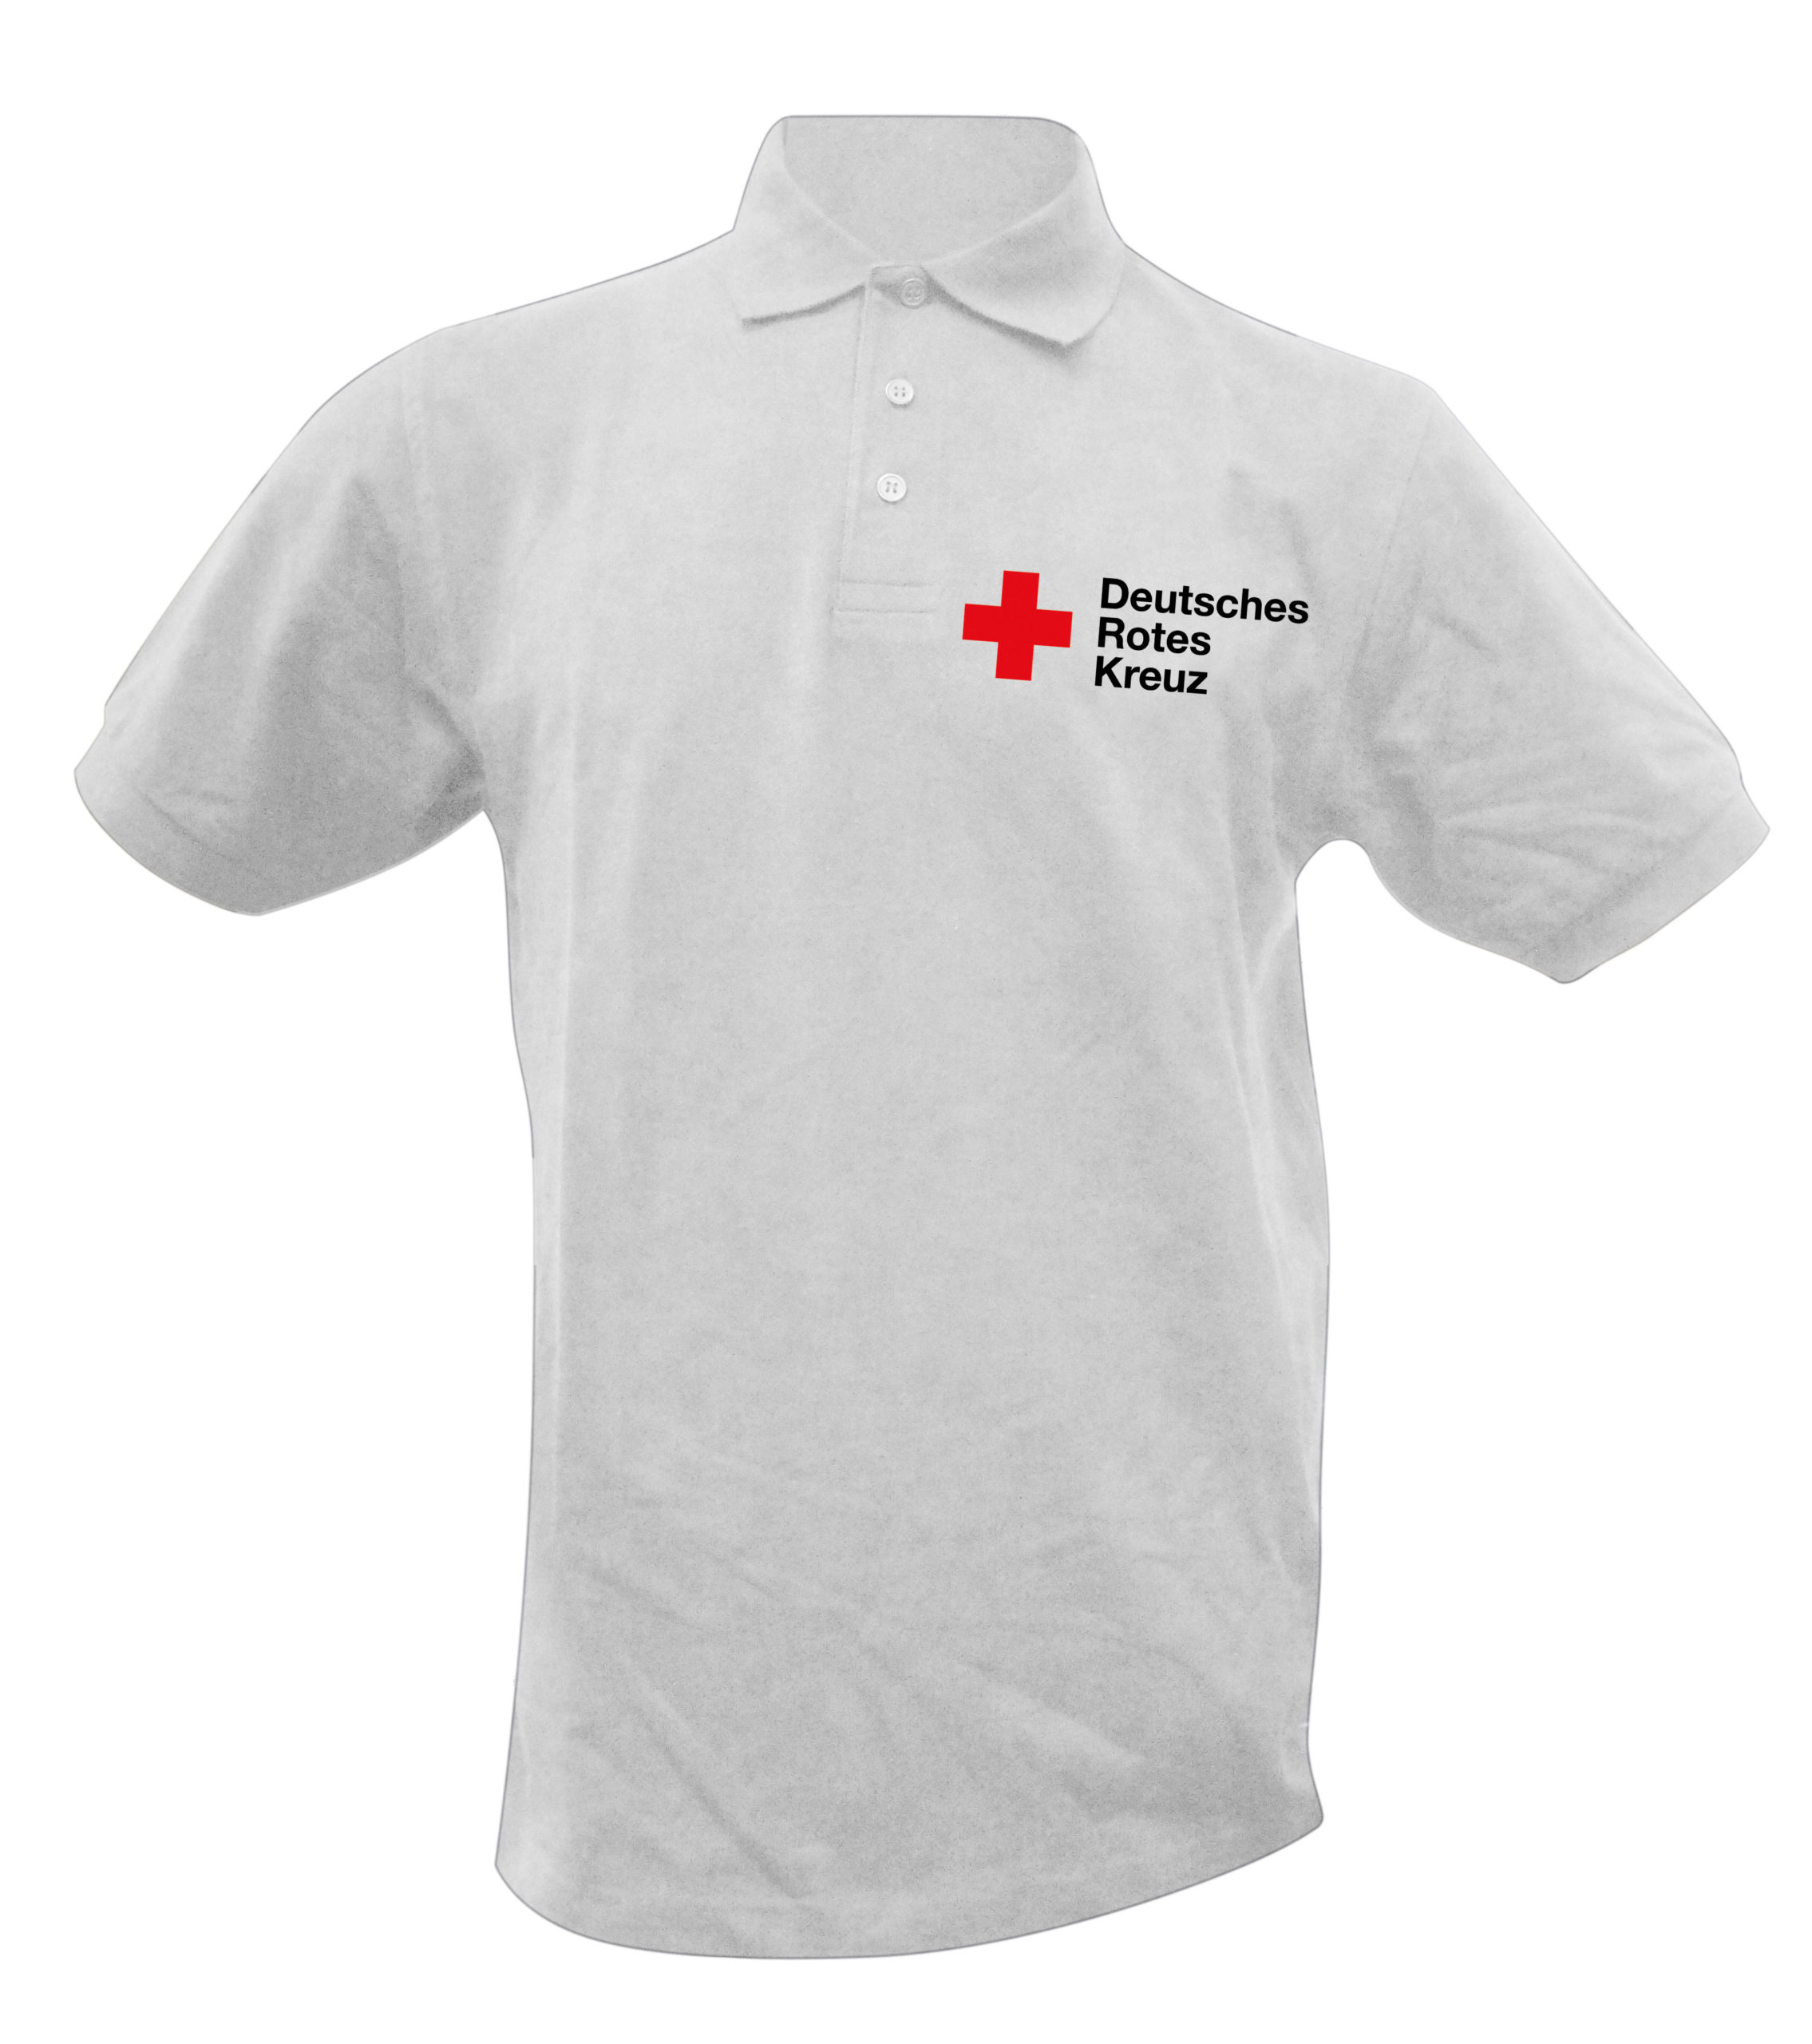 DRK Poloshirt Rundlogo Stick über Tasche Baumwolle Größe XS Rotes Kreuz weiß 